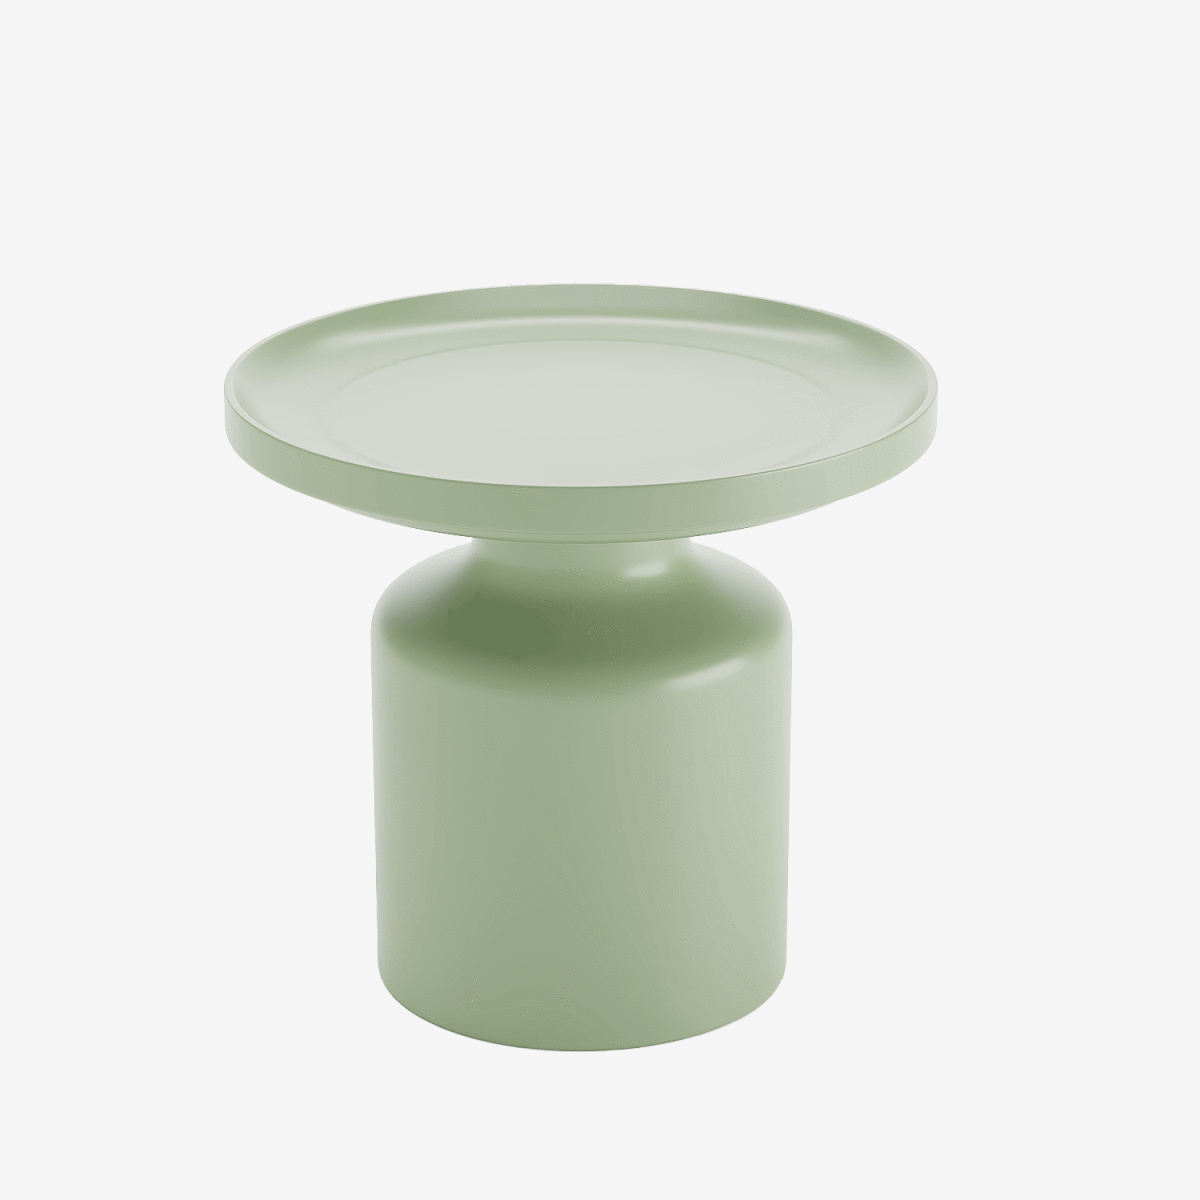 Moderne et rond, ce bout de canapé circulaire en métal vert clair s'intègre dans tous les style de décorations d'intérieurs